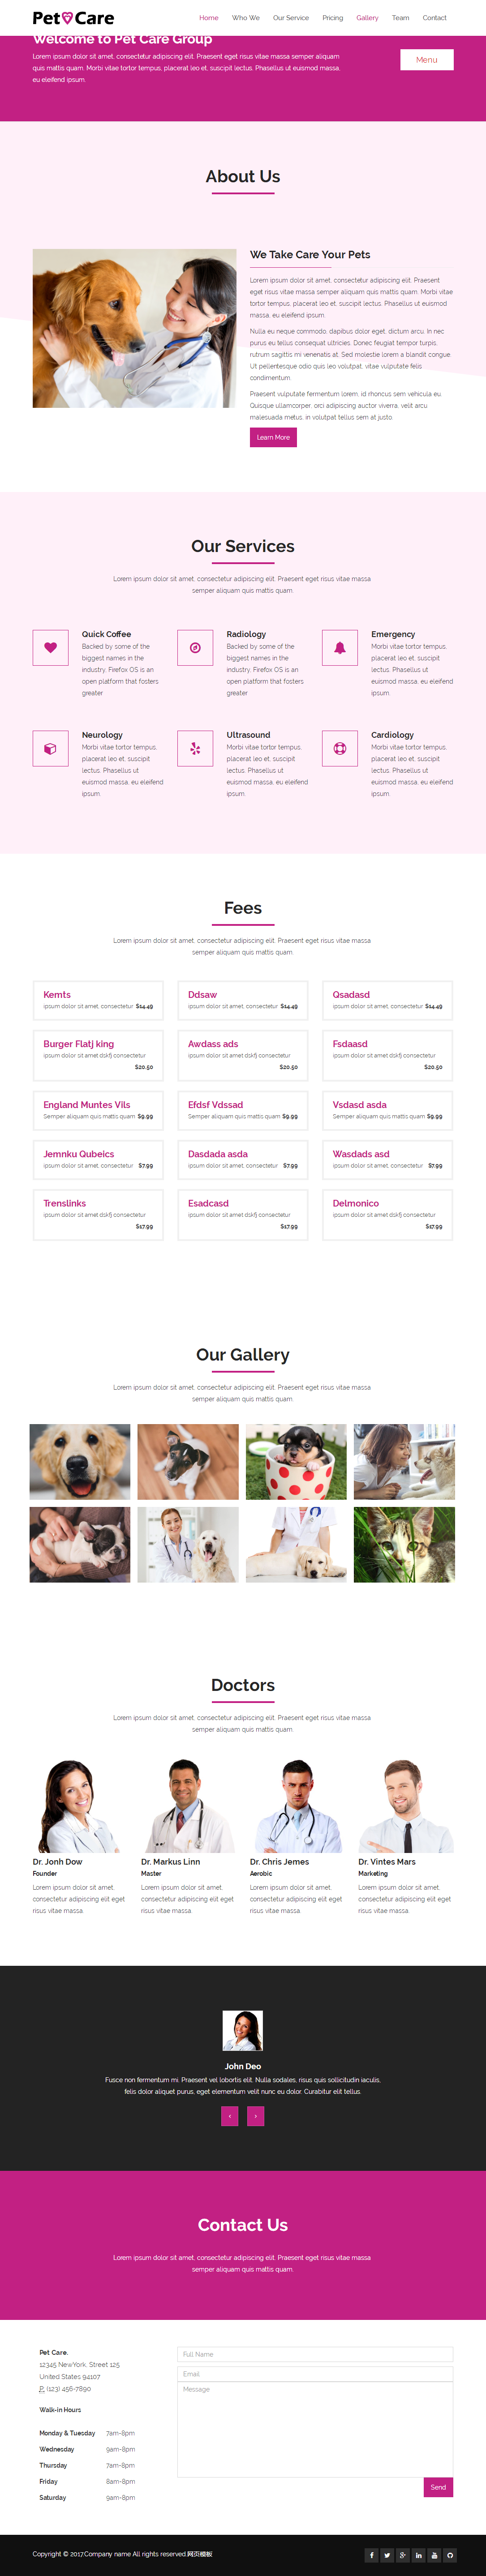 粉色宽屏风格的宠物医院网站模板下载